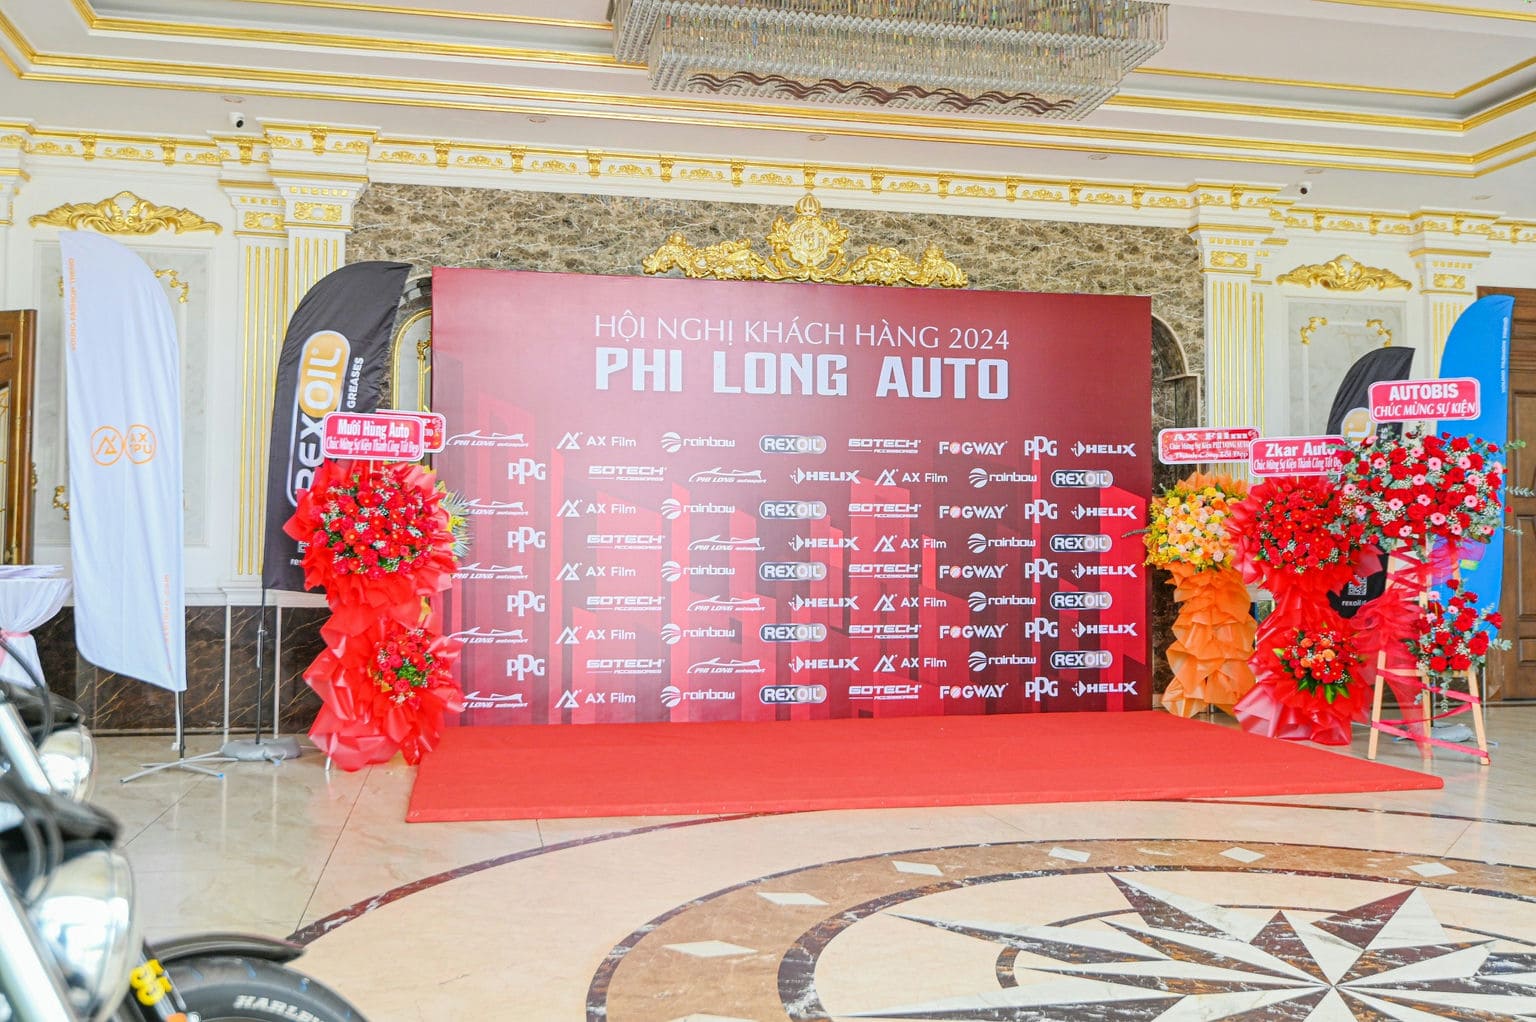 HOI NGHI KHACH HANG PHI LONG AUTO 2024 18 | Phi Long Auto